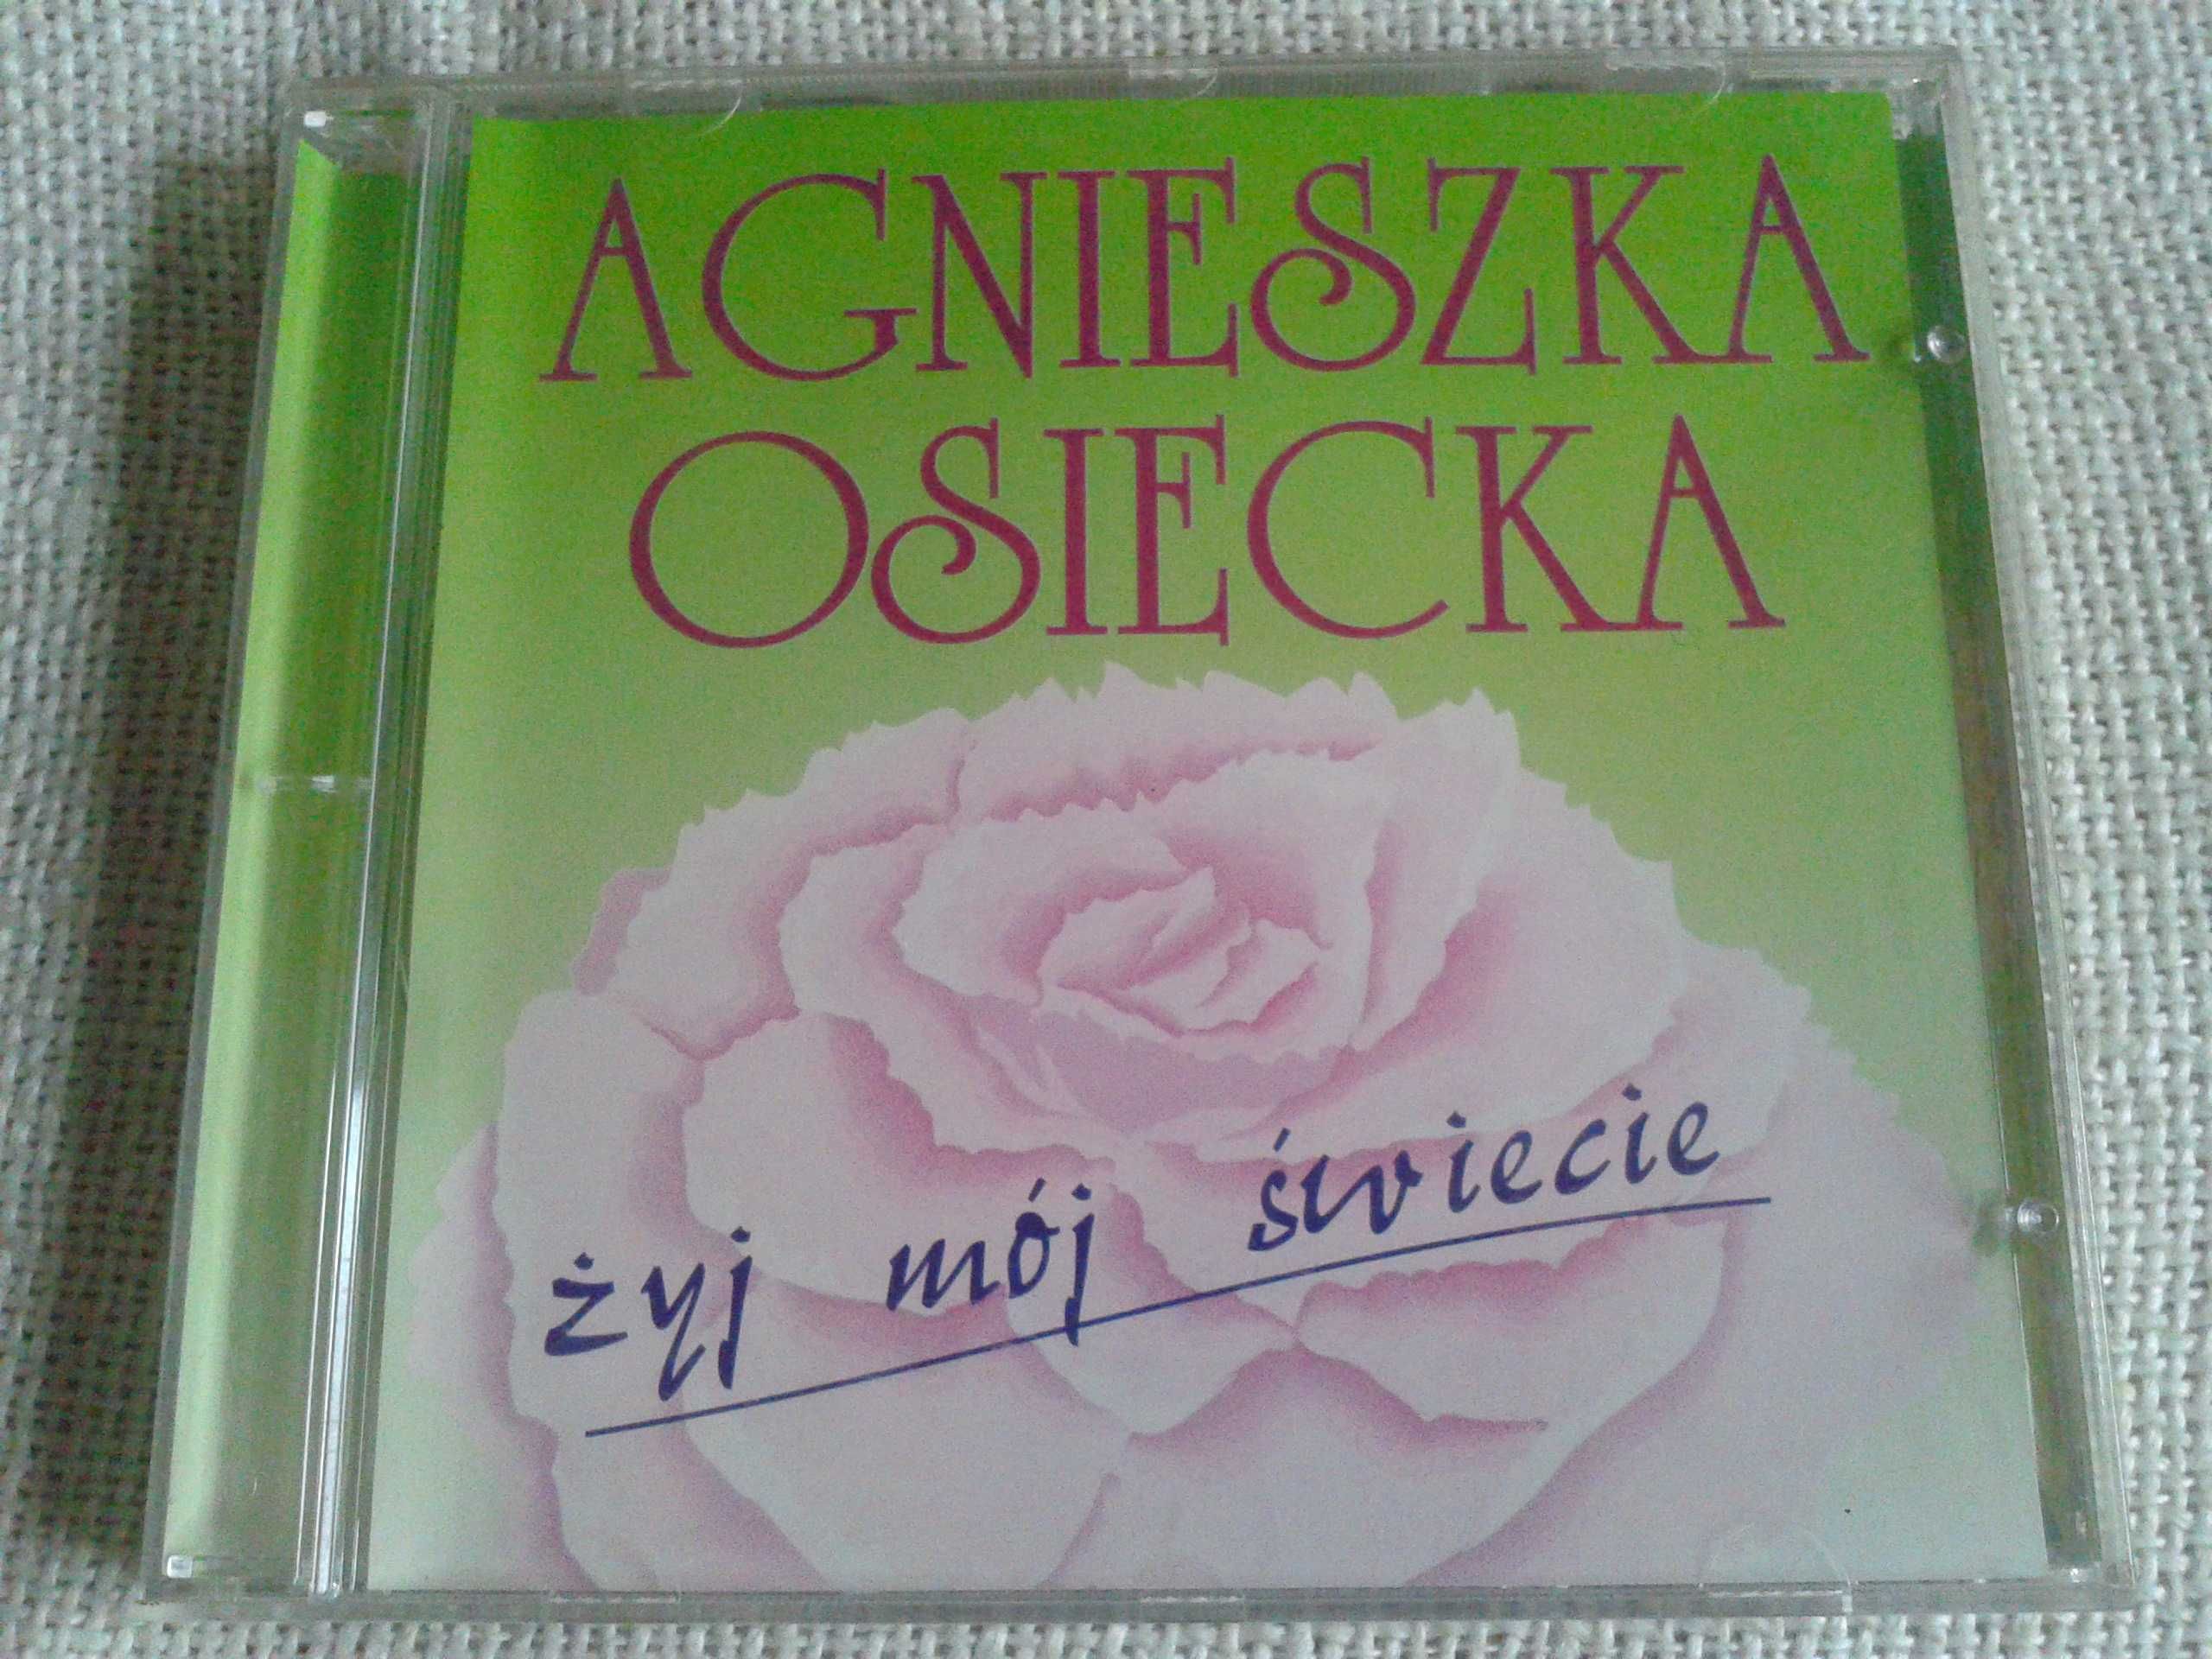 Agnieszka Osiecka - Żyj mój świecie  CD